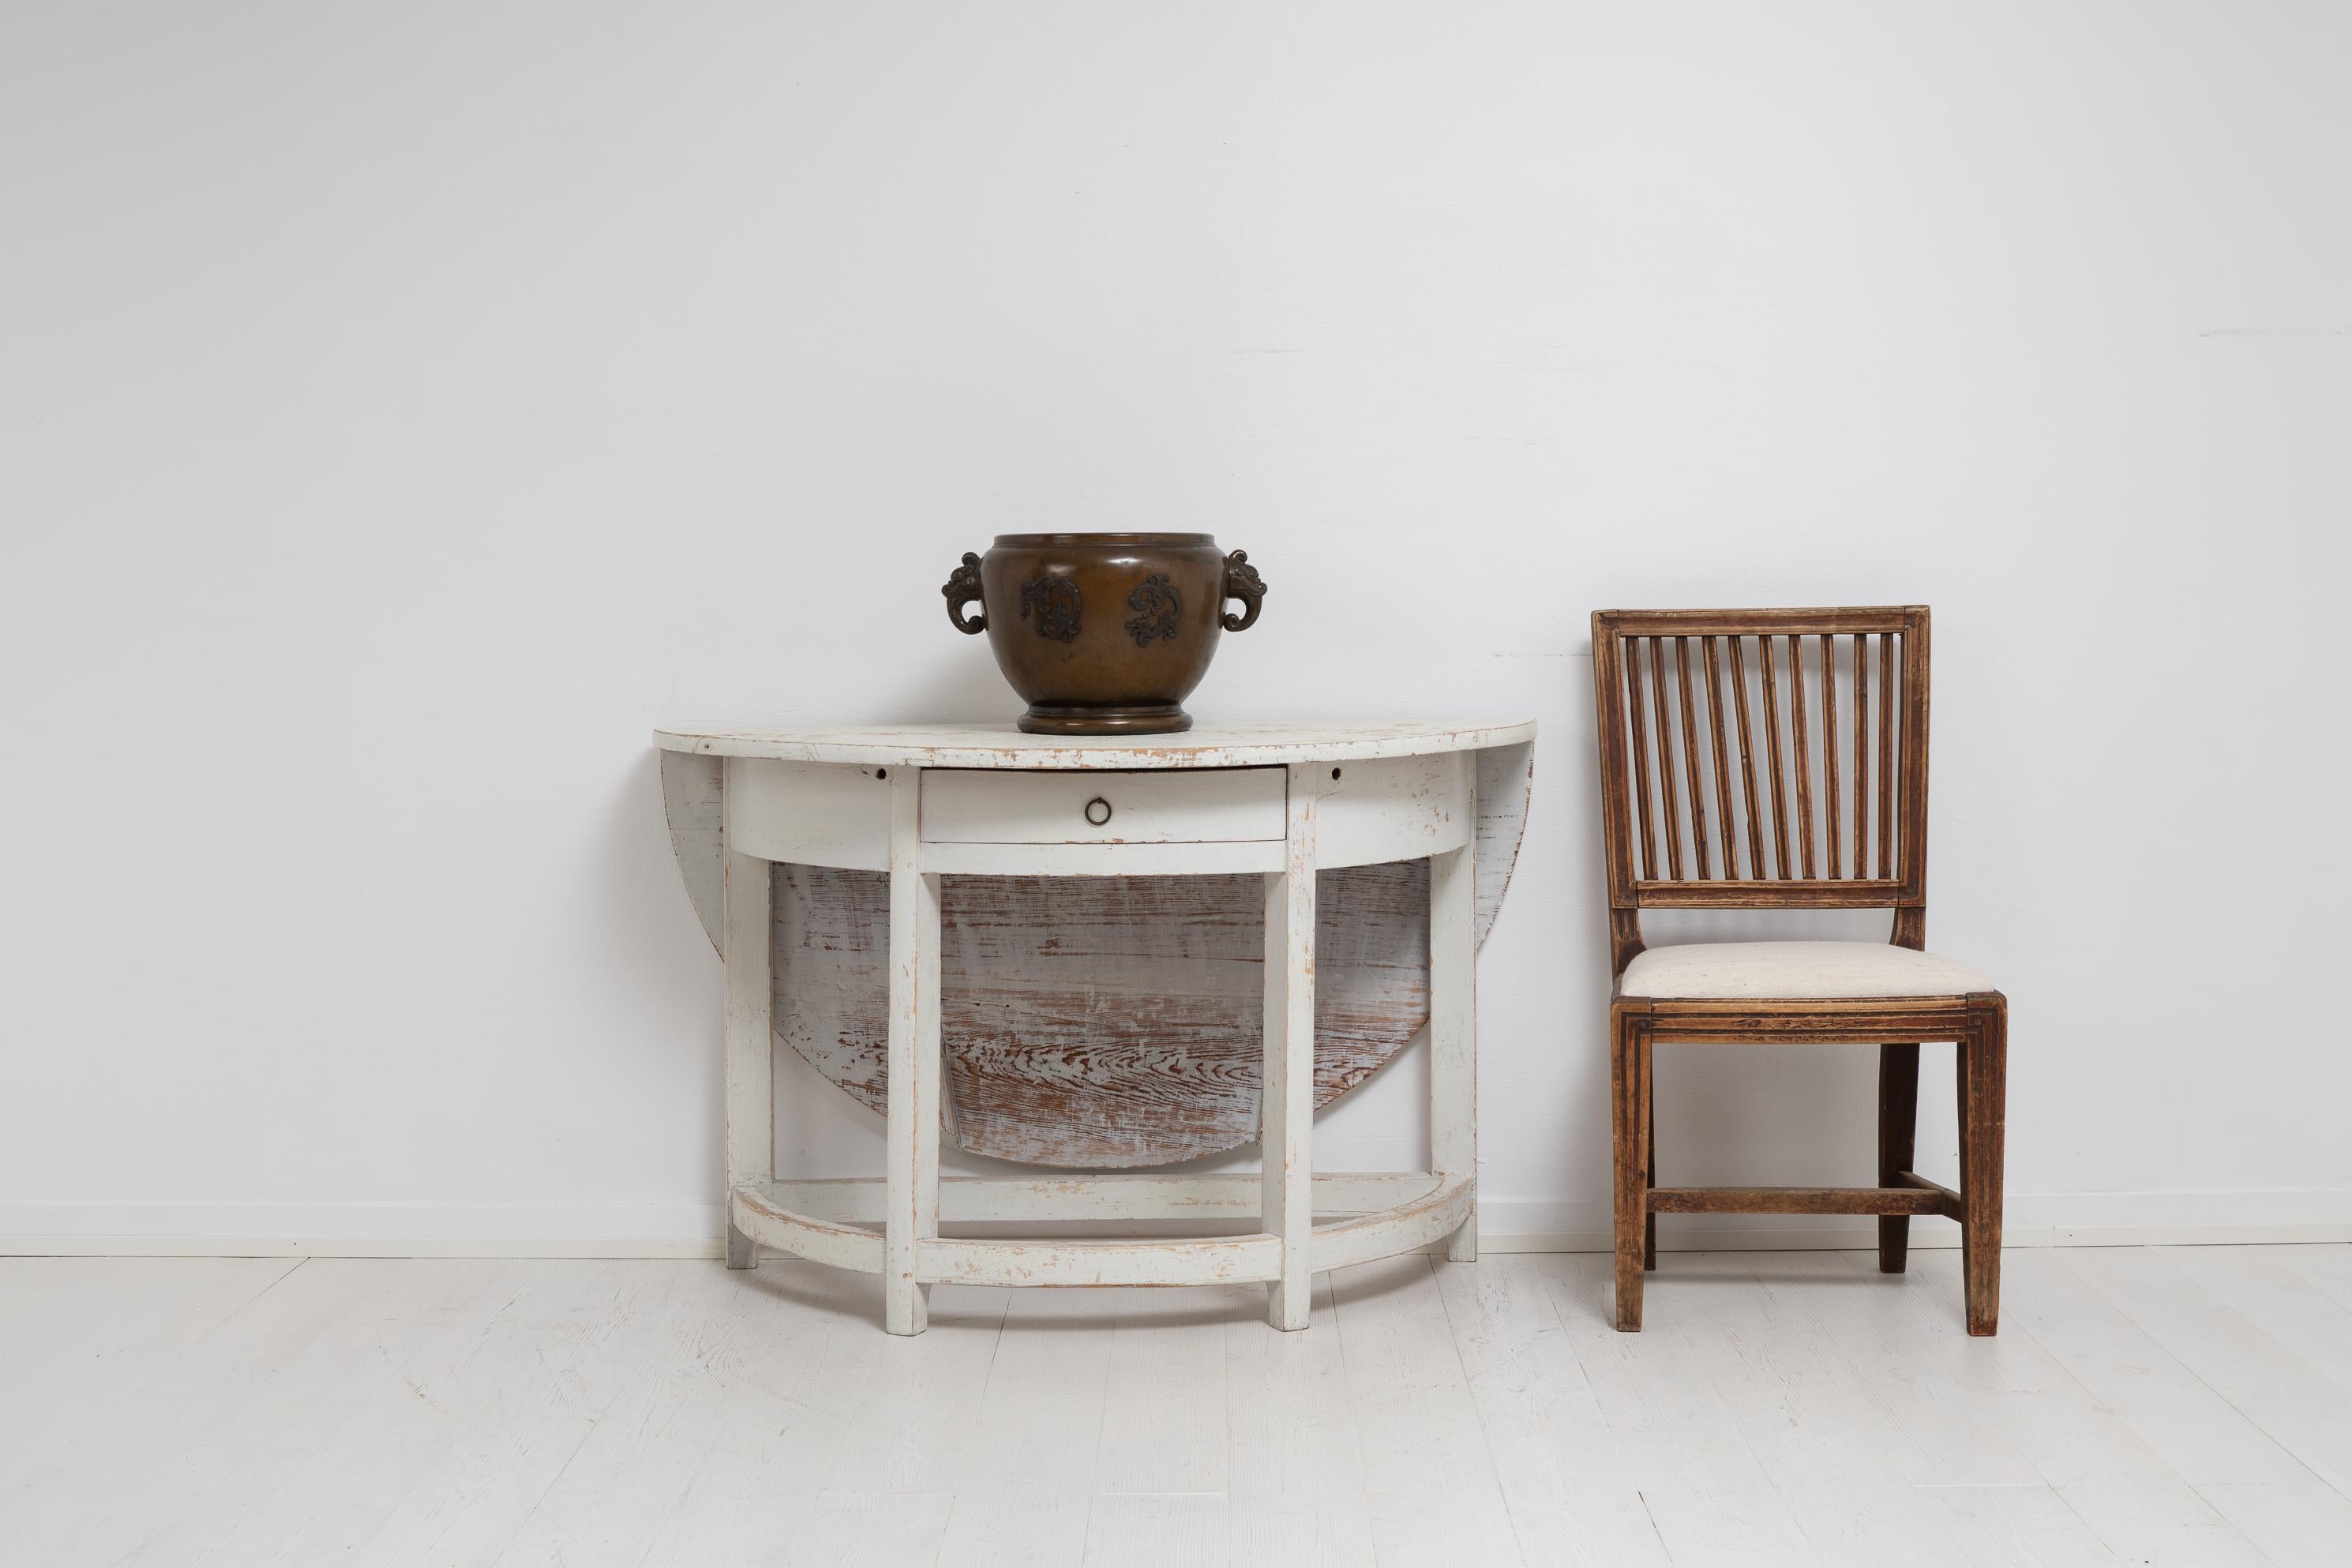 Nordschwedischer Konsolentisch im gustavischen Stil. Der Tisch ist ein schwedisches Landhausmöbel aus dem frühen 19. Jahrhundert, 1810 bis 1820, und er ist ein ungewöhnliches Modell. Die Tischplatte hat eine runde Demi-Lune-Form und auch eine